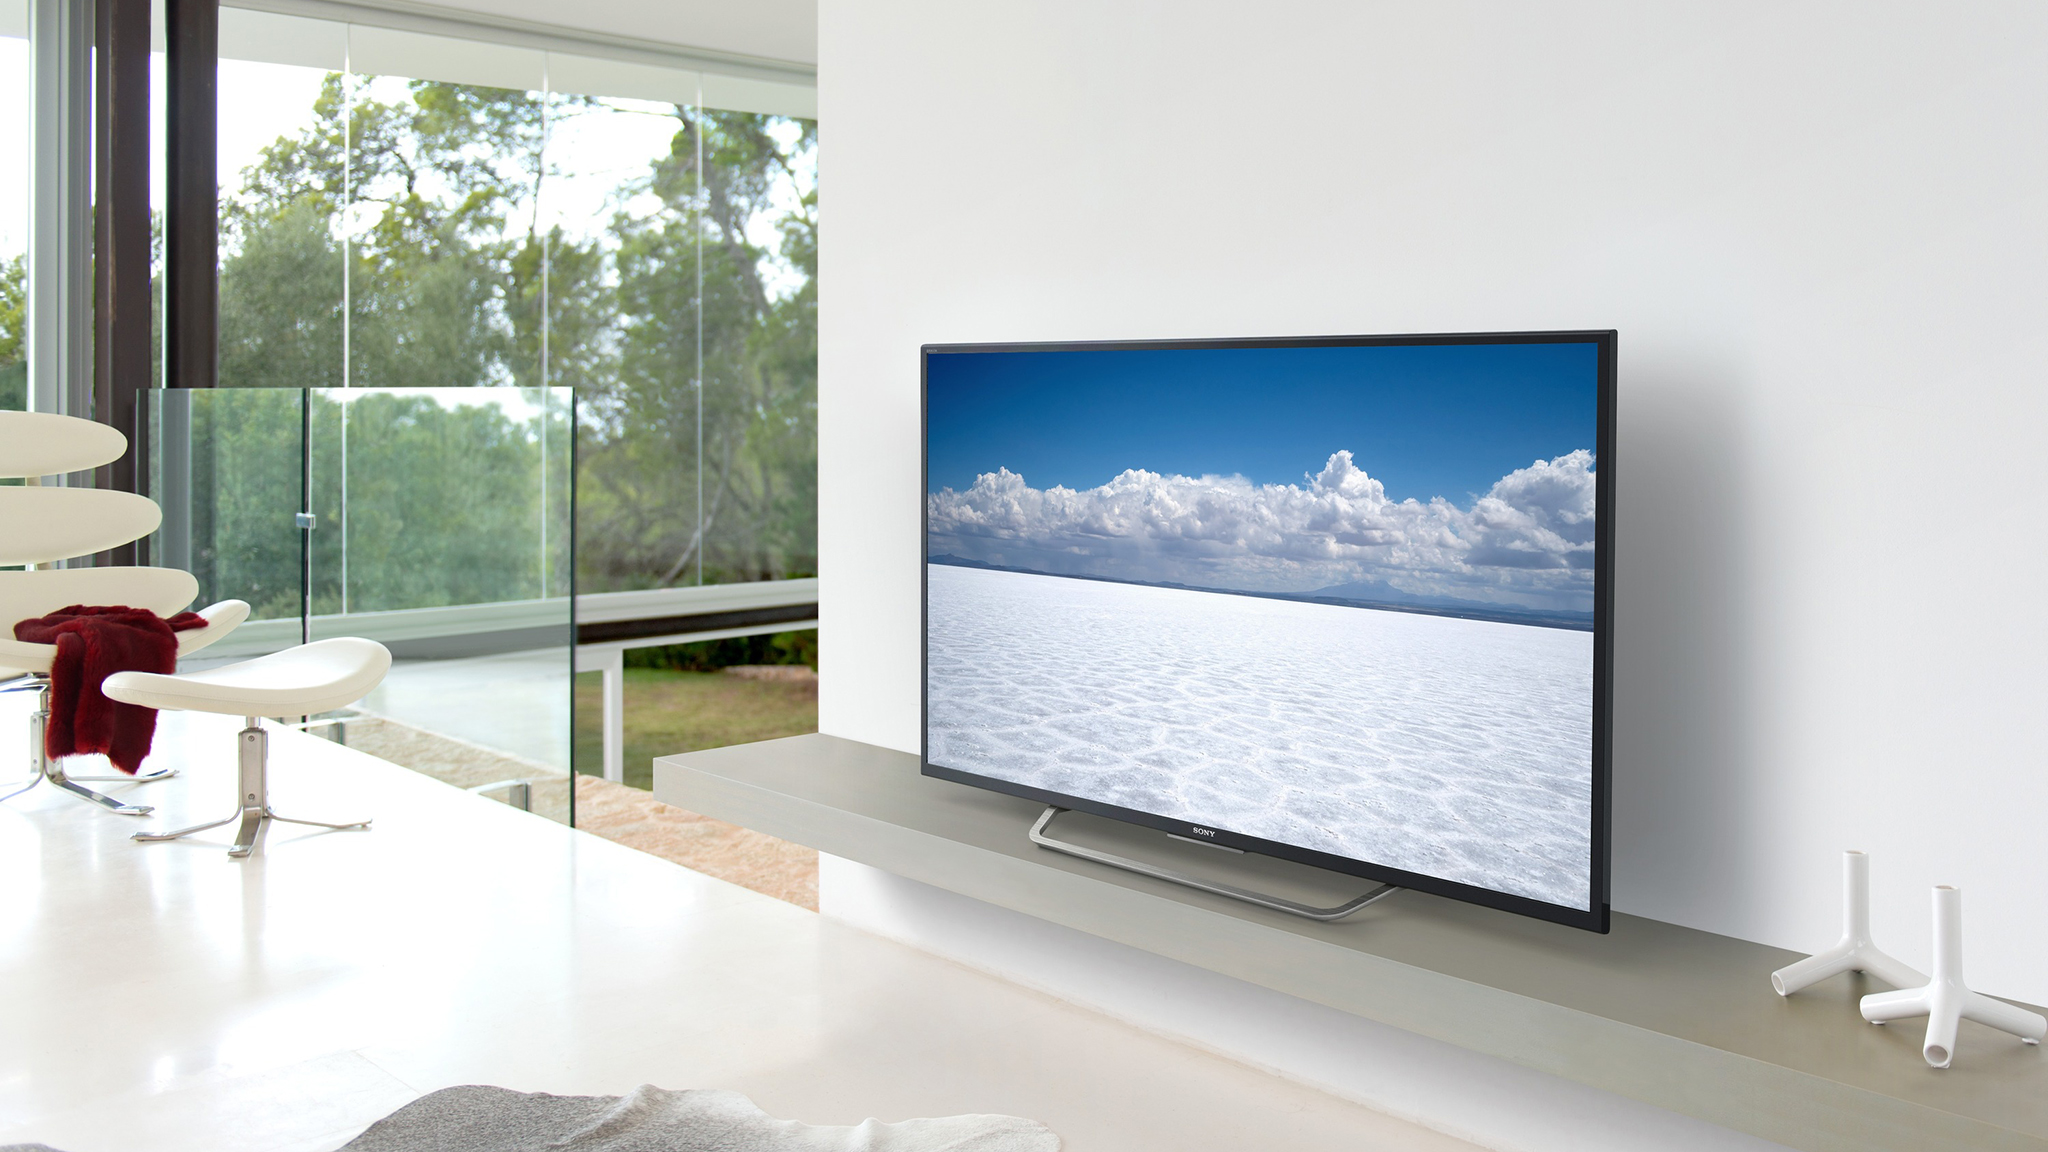 4K-TV-Technologie erklärt: Was ist 4K und warum sollten Sie sich darum kümmern?